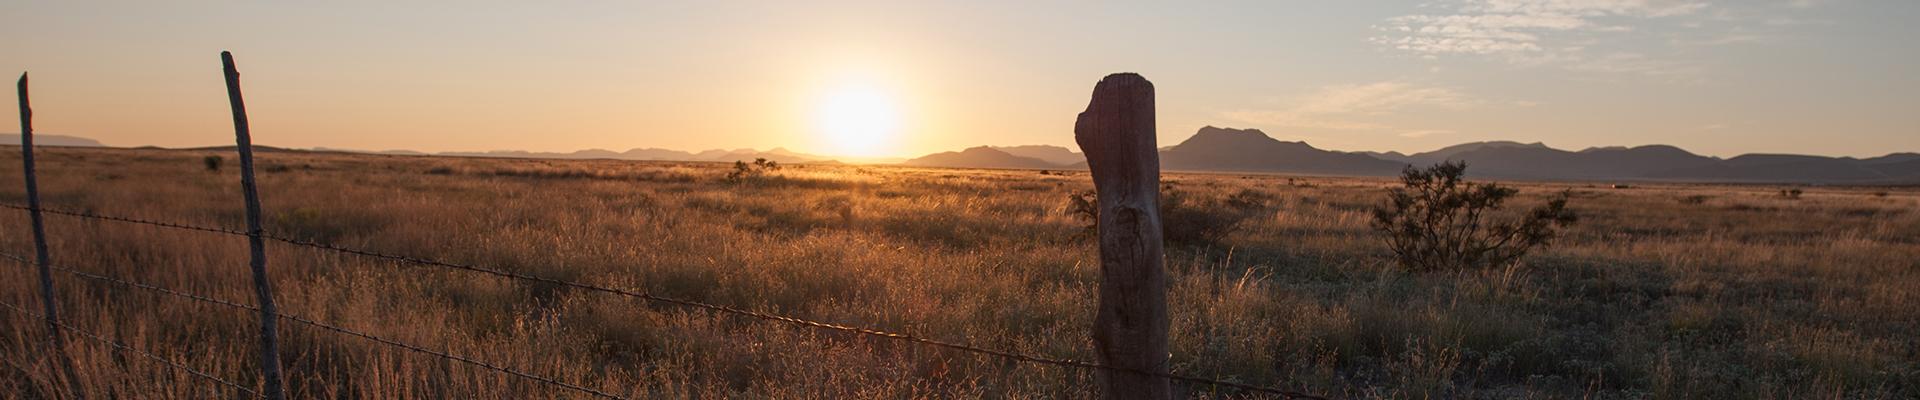 a prairie at sunset